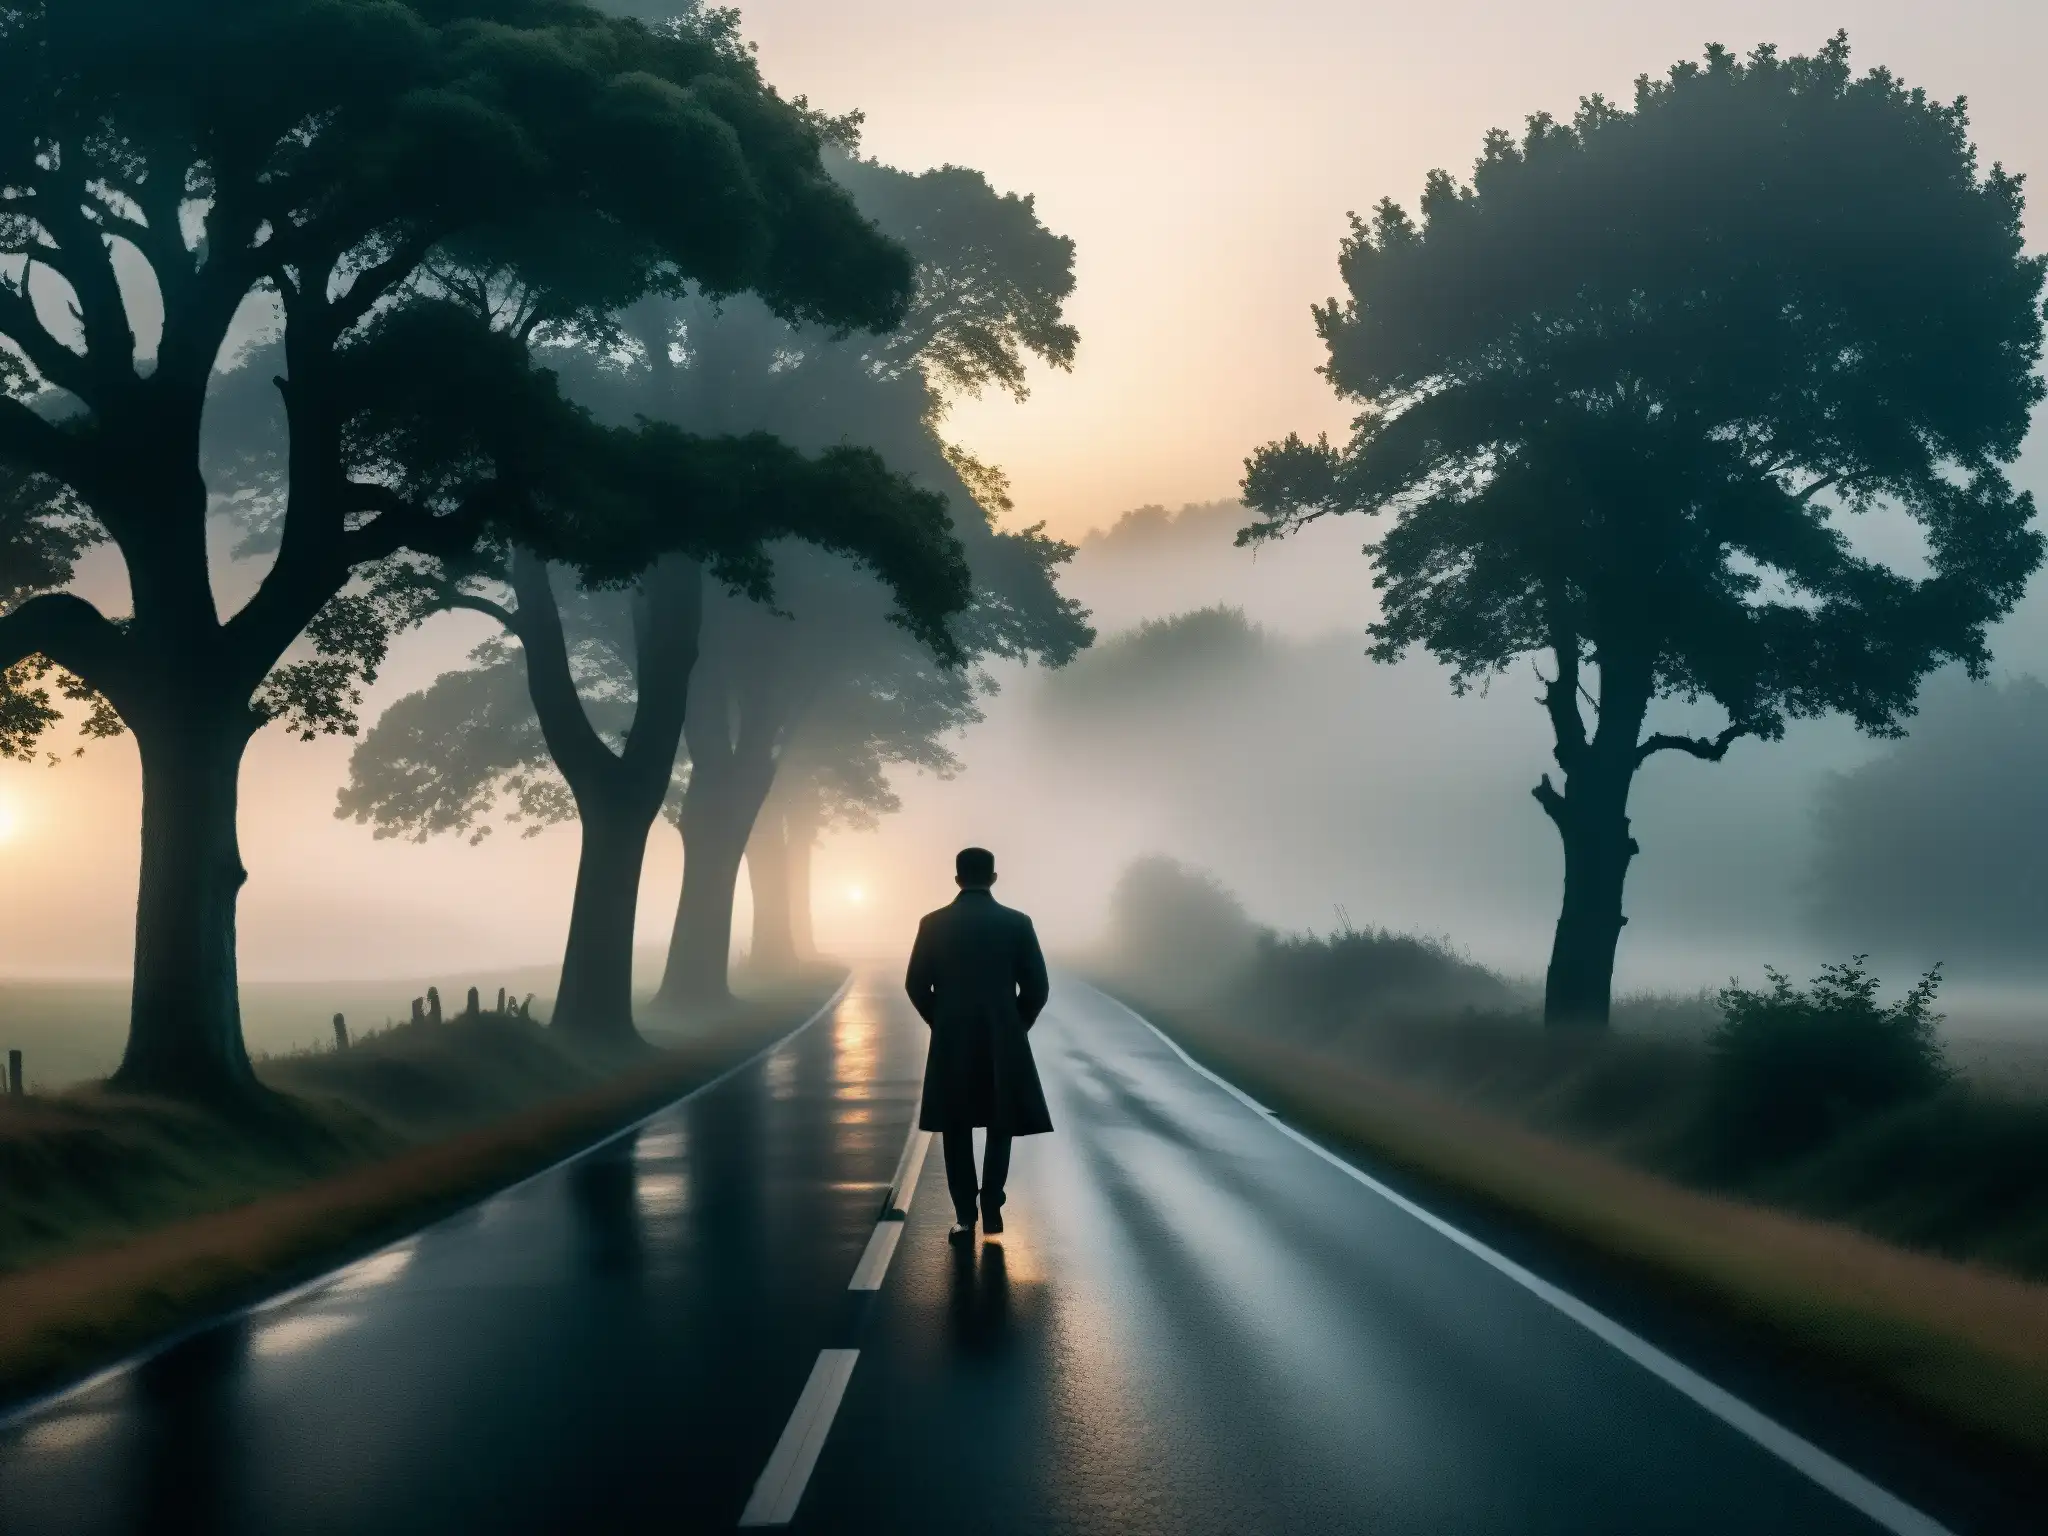 Silueta misteriosa en curva de carretera desierta al anochecer, rodeada de neblina y árboles ominosos